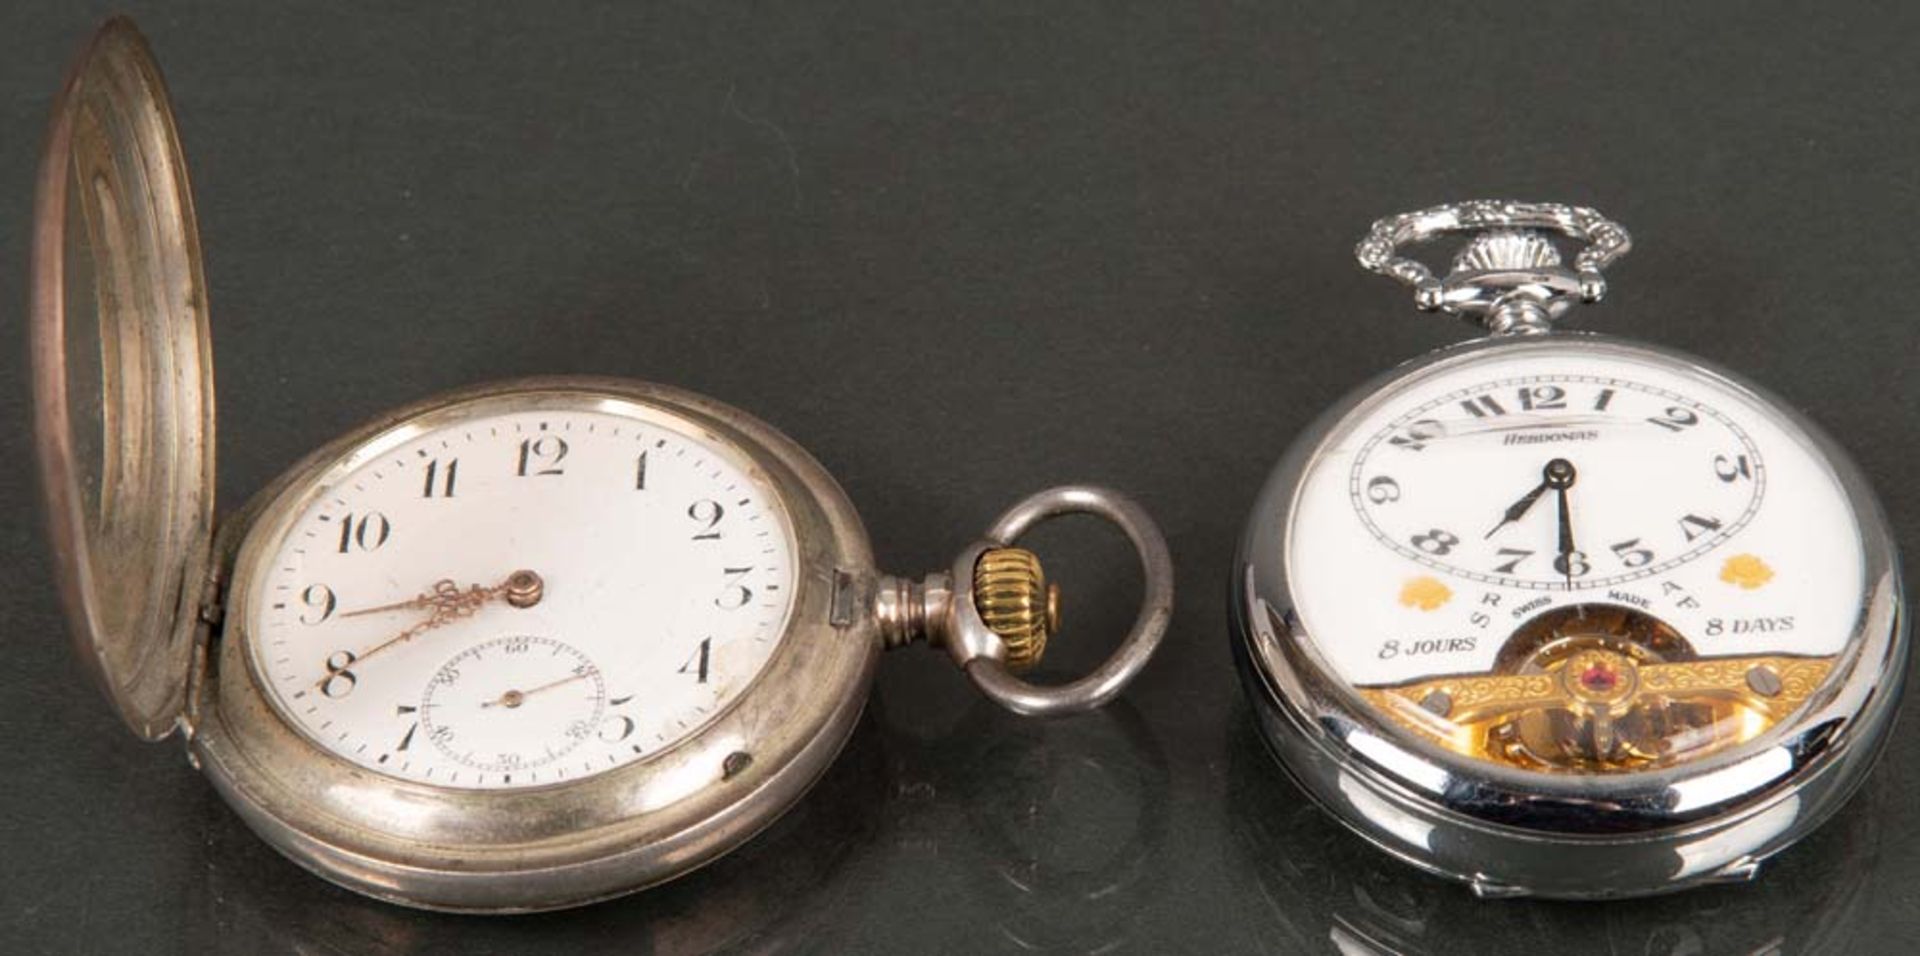 Zwei Taschenuhren. IWC / Hebdomas. Silber bzw. Metall, IWC auf Werk gemarkt. (Funktion ungeprüft)